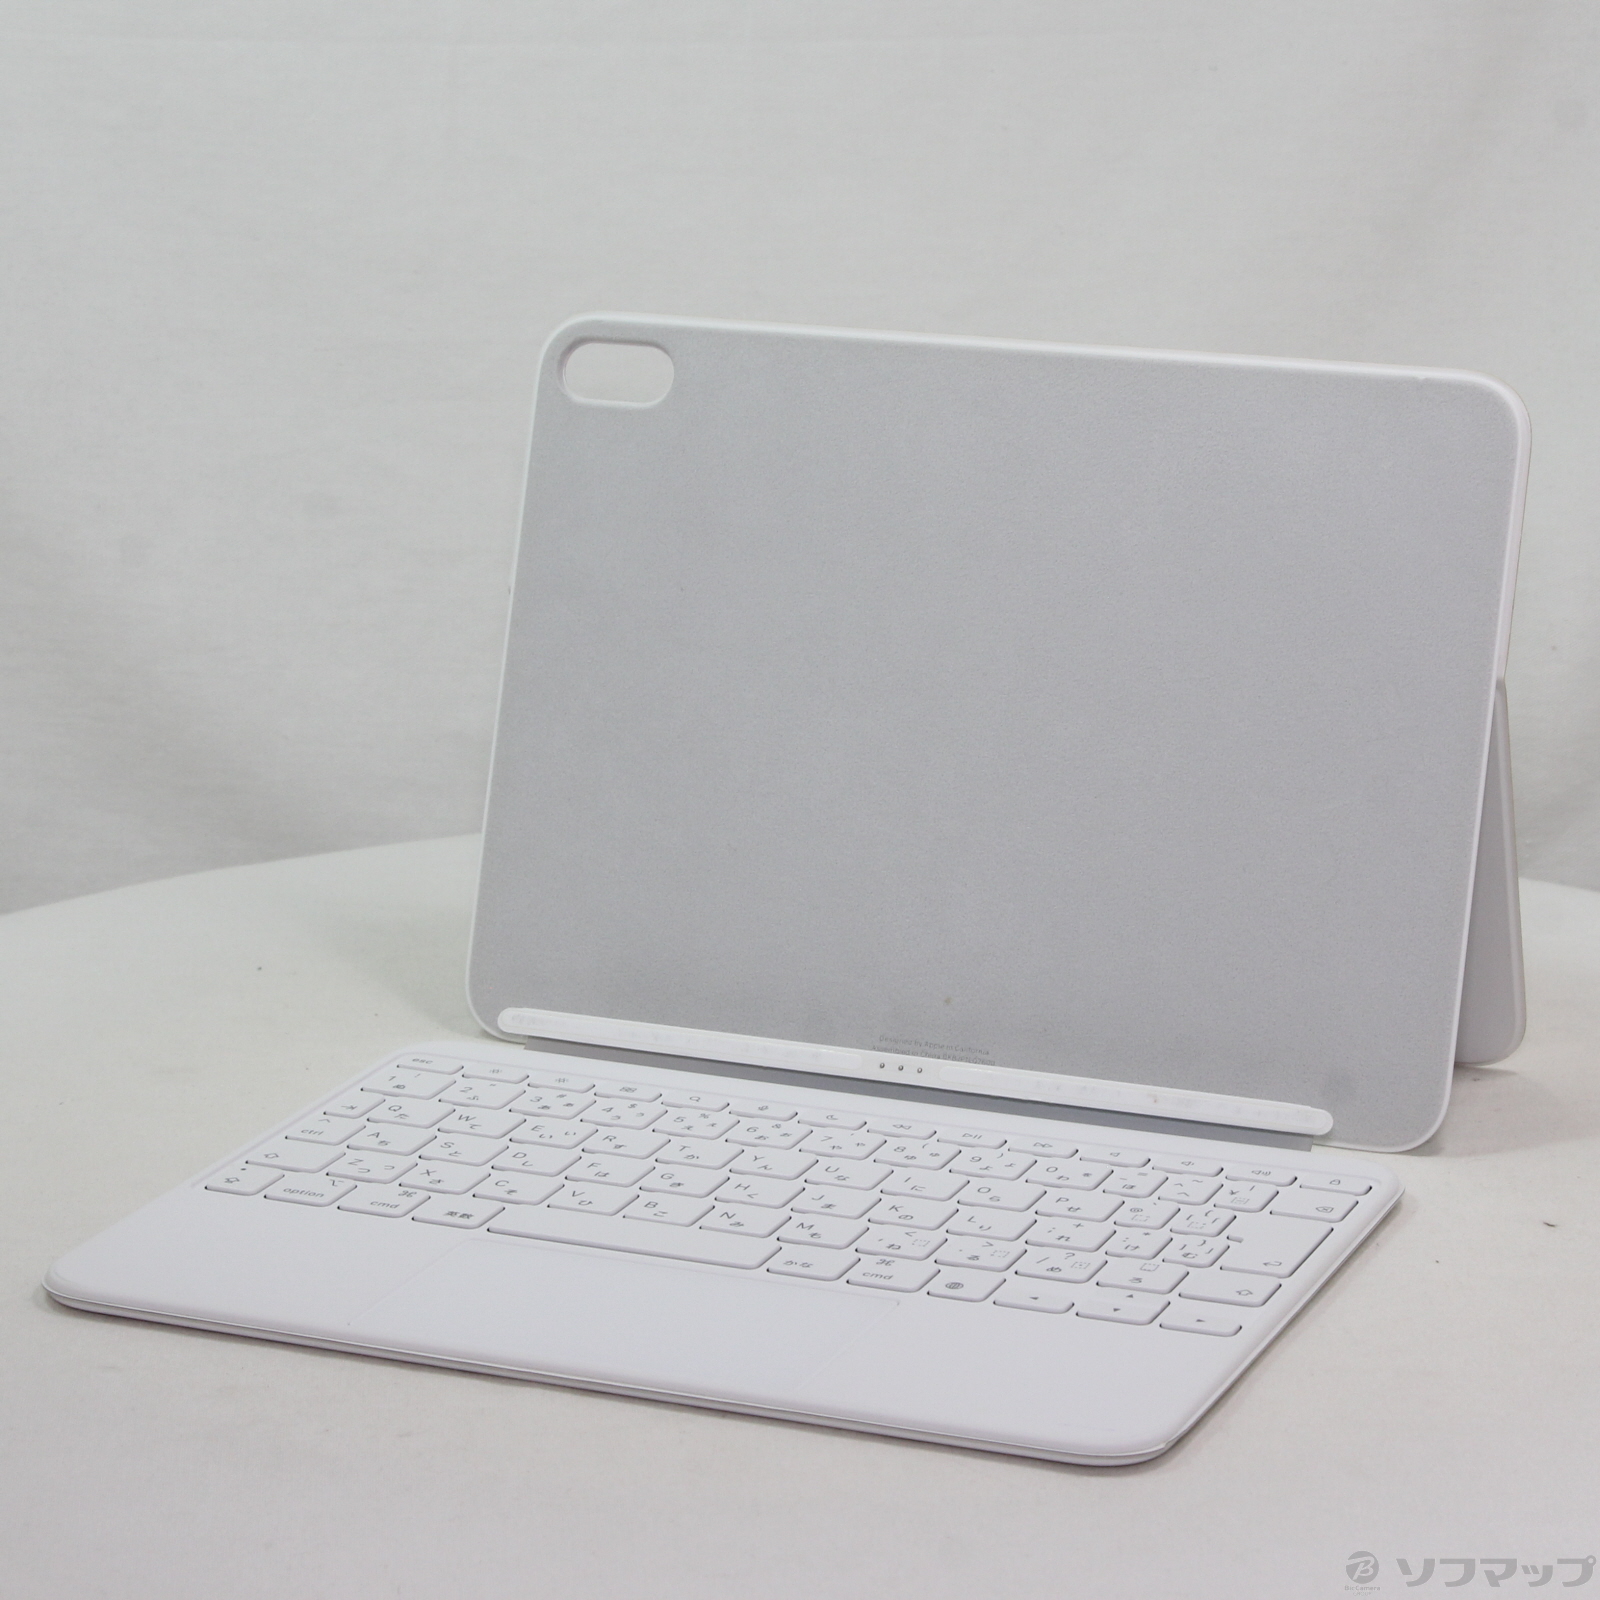 中古品供iPad(第10代)使用的Magic Keyboard Folio日本語MQDP3J/A|no